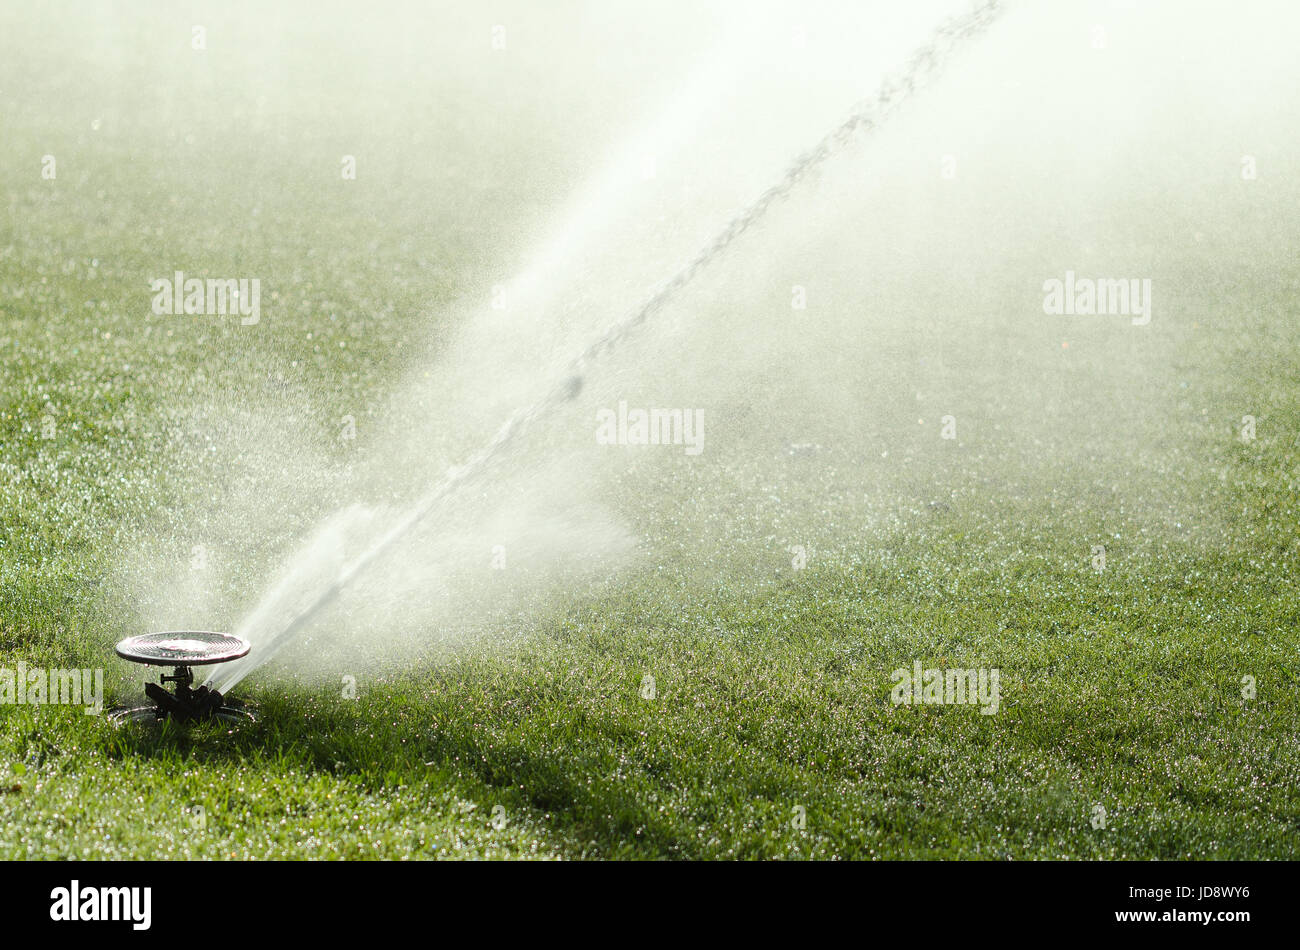 Auswirkungen Sprinkler auf Rasen in Aktion. Impuls Sprinkler losziehst mit Streaming-Brunnen am grünen Kunstrasen in der prallen Sonne. Stockfoto